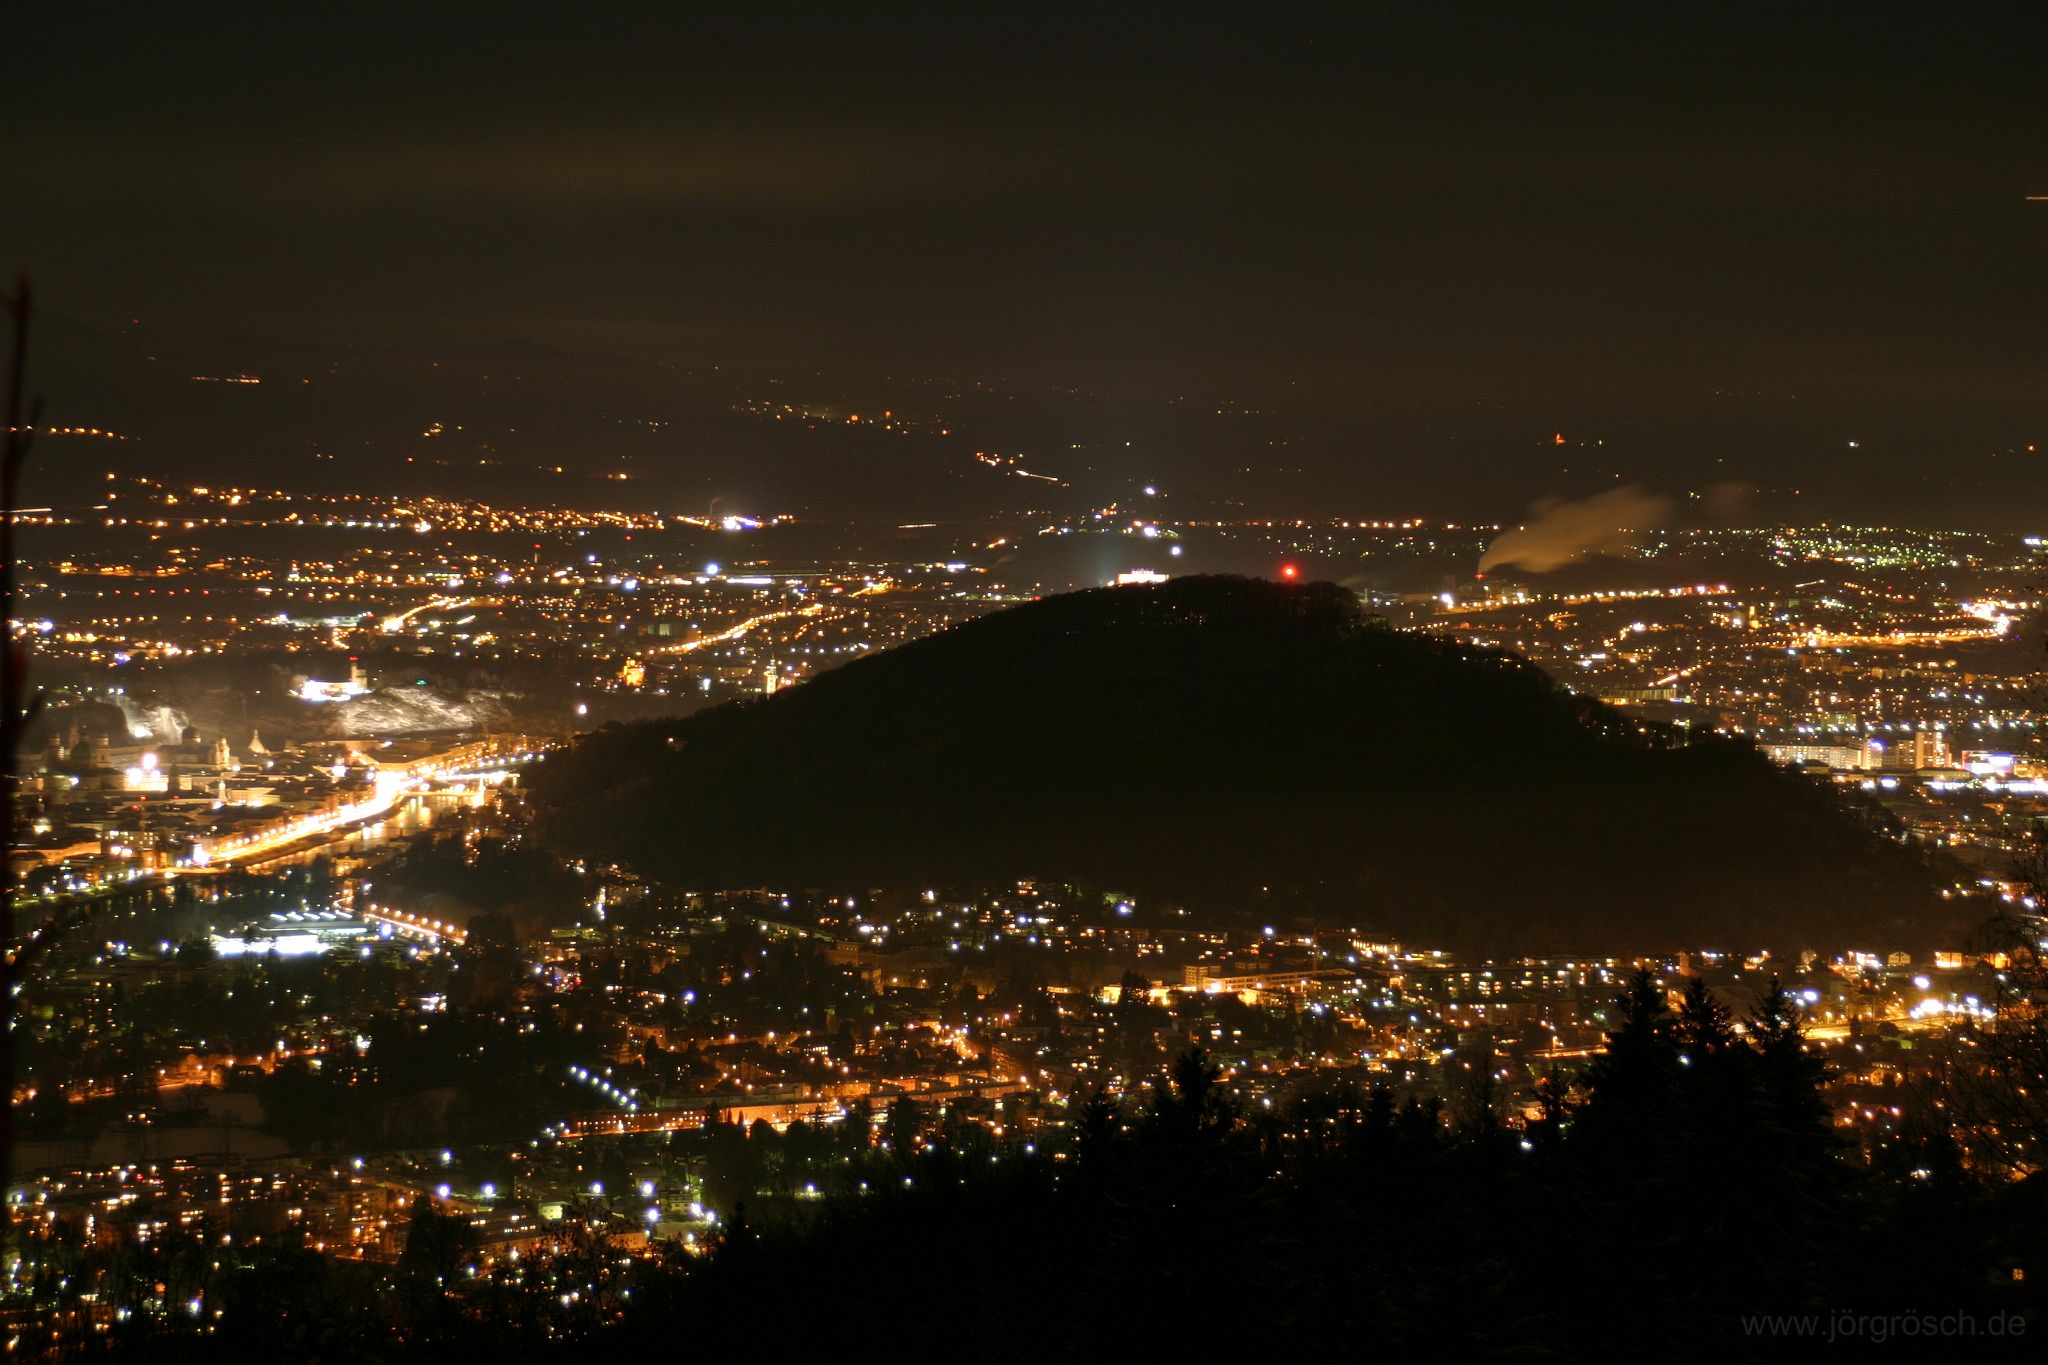 200512 salzburg.jpg - Salzburg bei Nacht vom Gaisberg aus gesehen